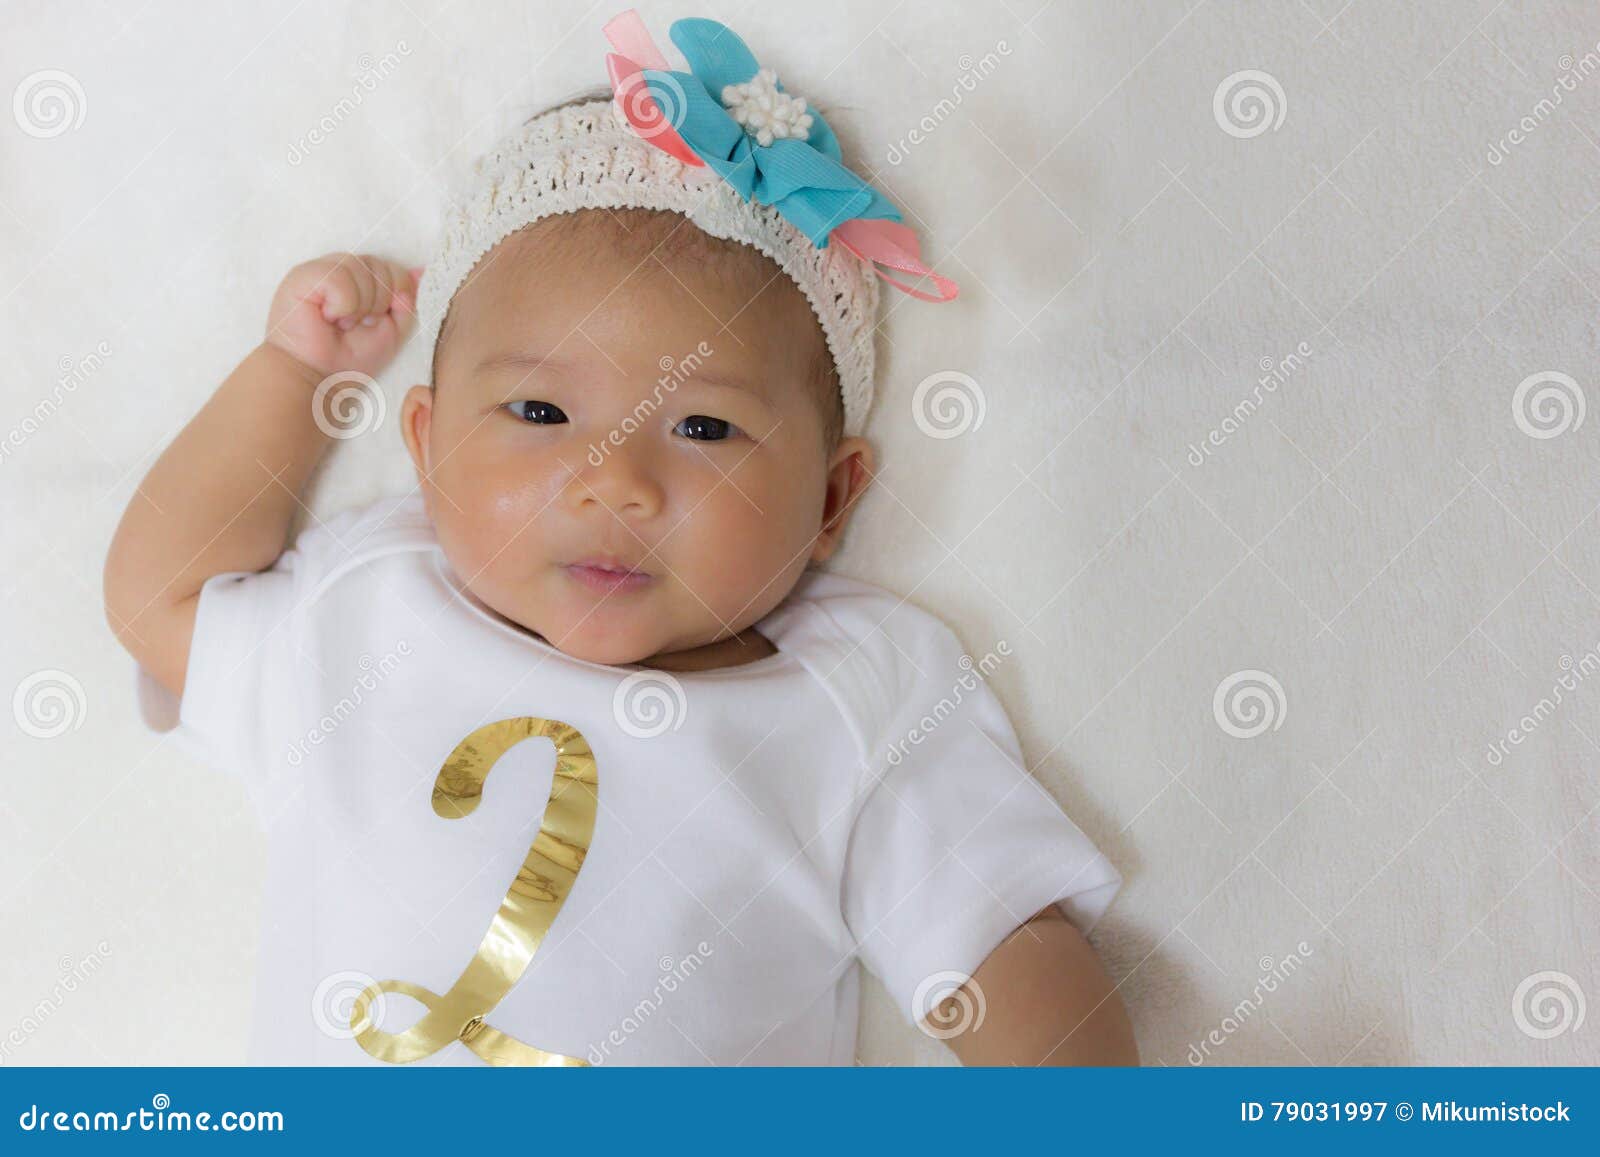 Bebe Lindo Asiatico Recien Nacido De Dos Meses Imagen De Archivo Imagen De Infante Llevado